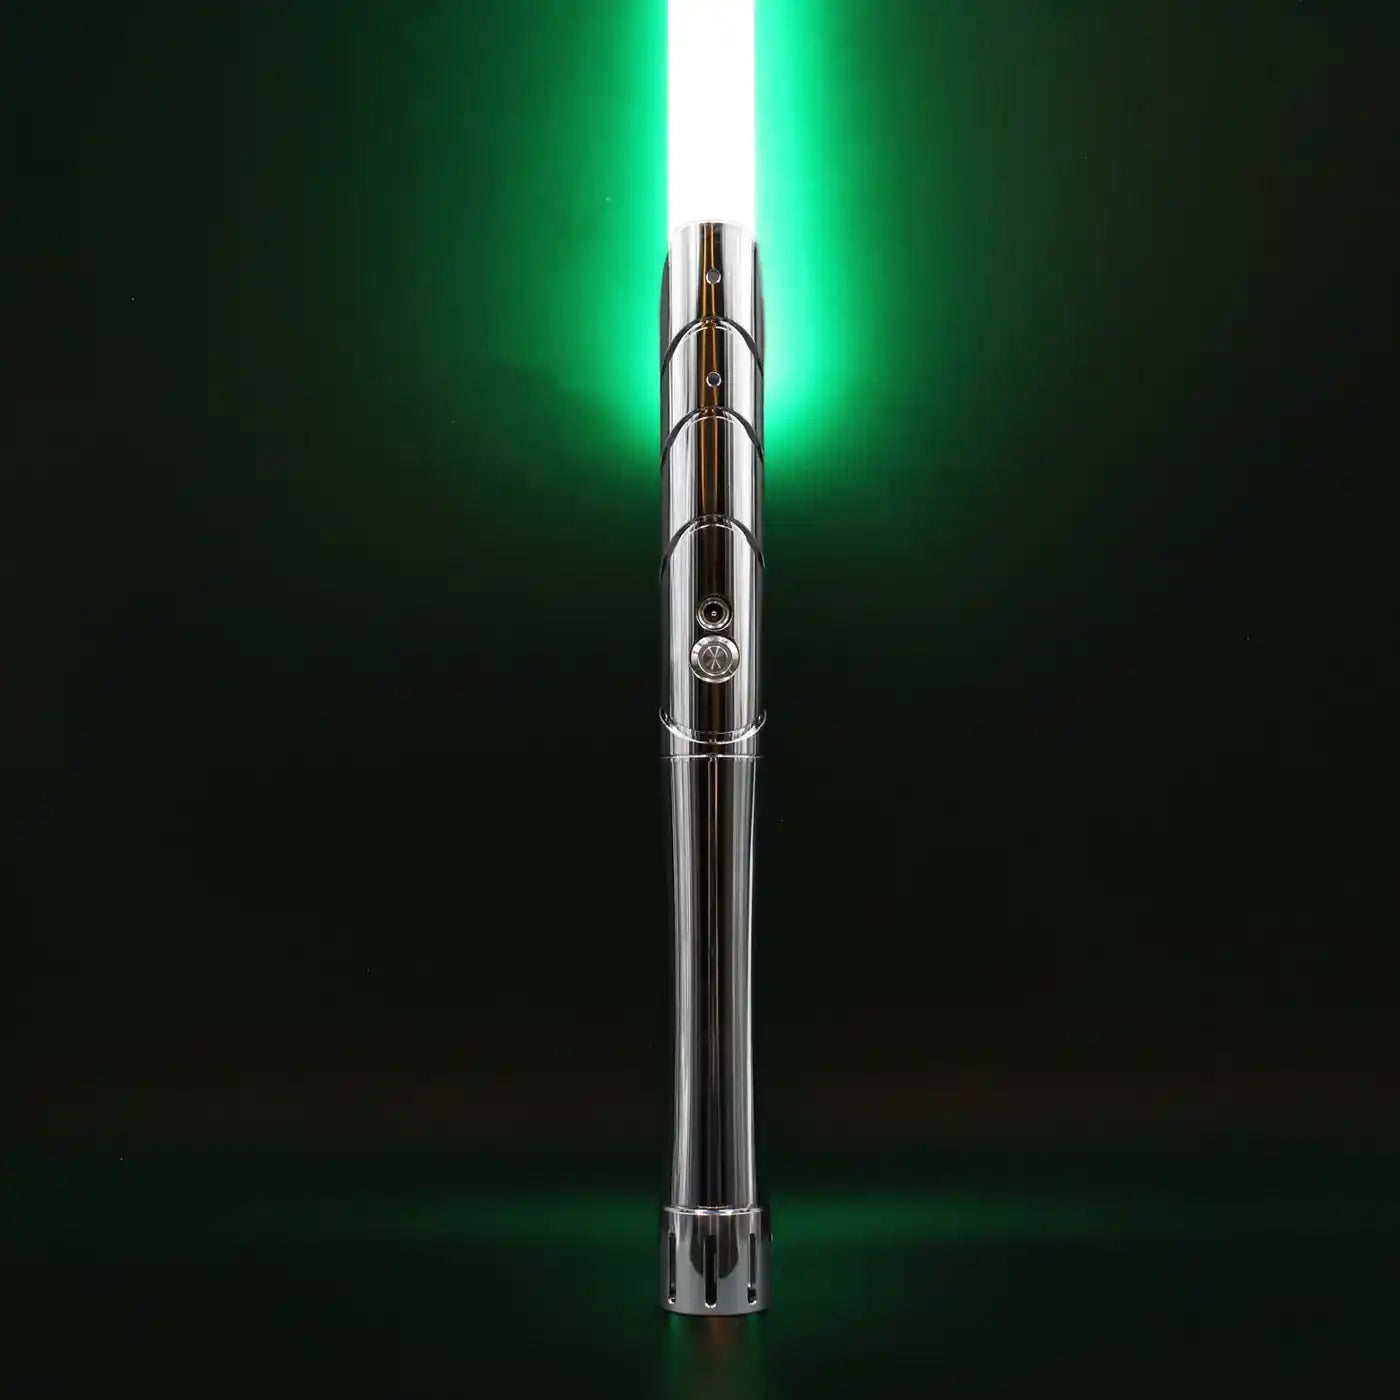 Elegance - KenJo Sabers - Star Wars Lightsaber replica Jedi Sith - Best sabershop Europe - Nederland light sabers kopen -